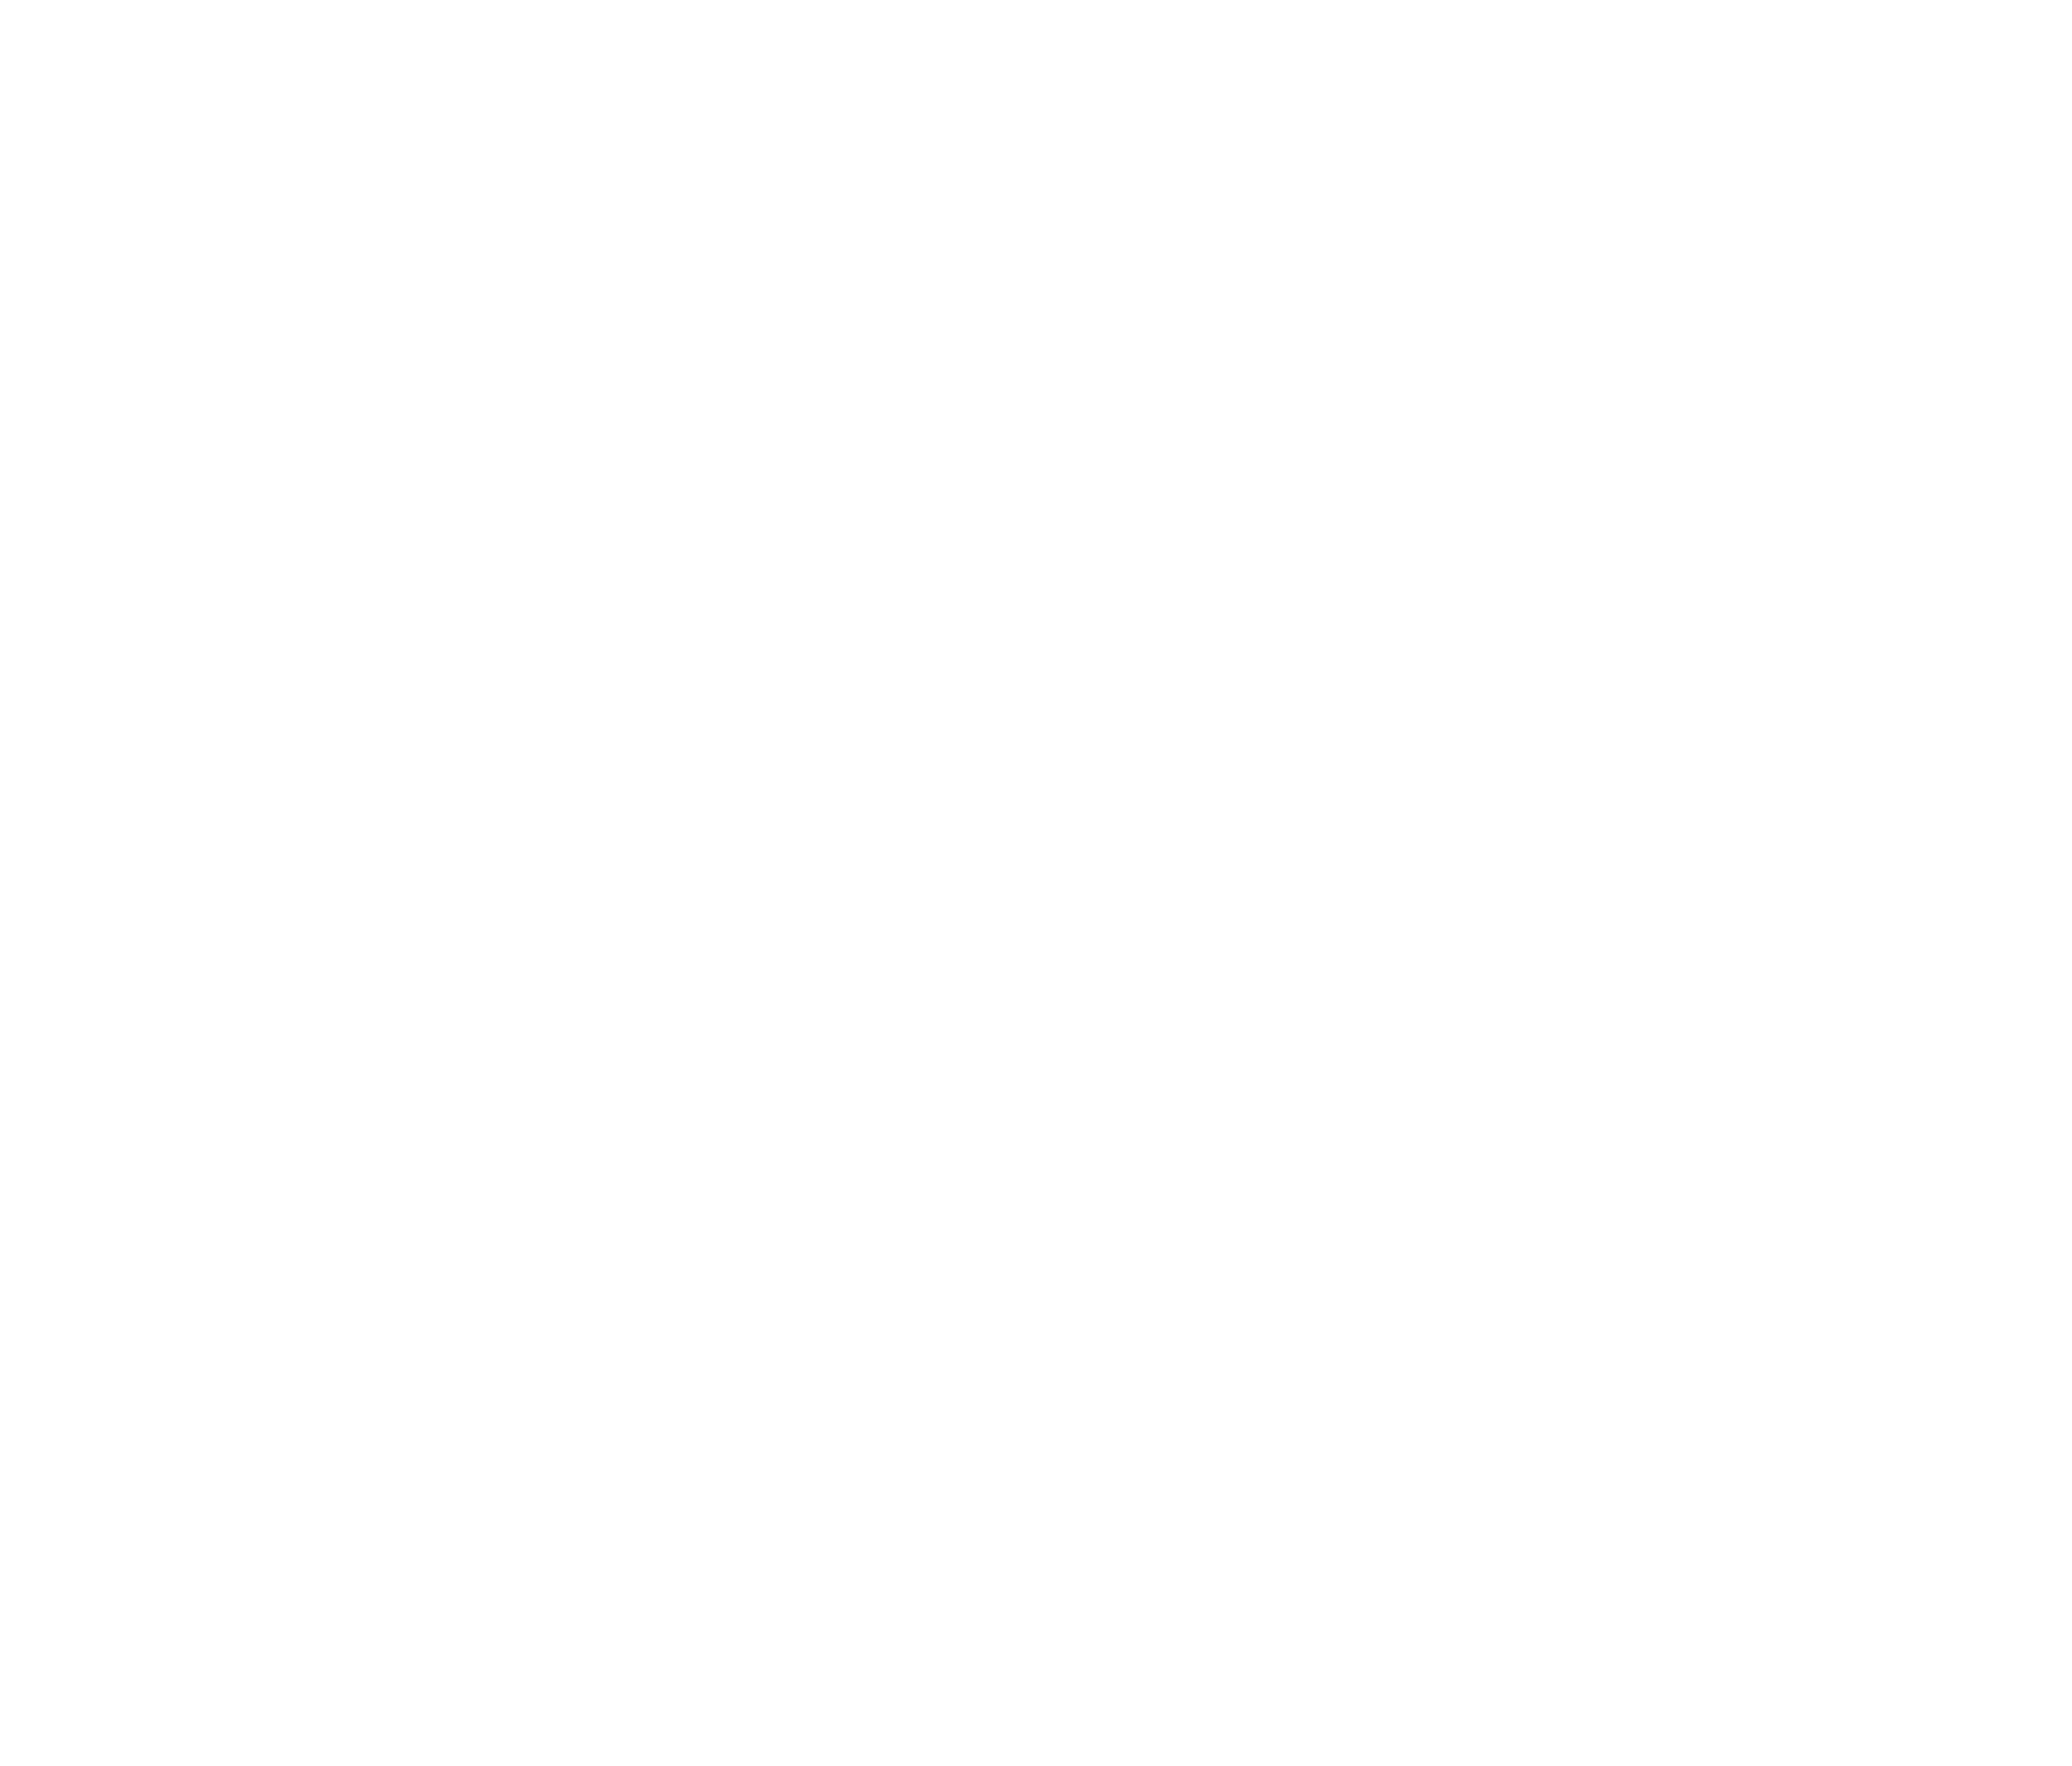 Guzzo